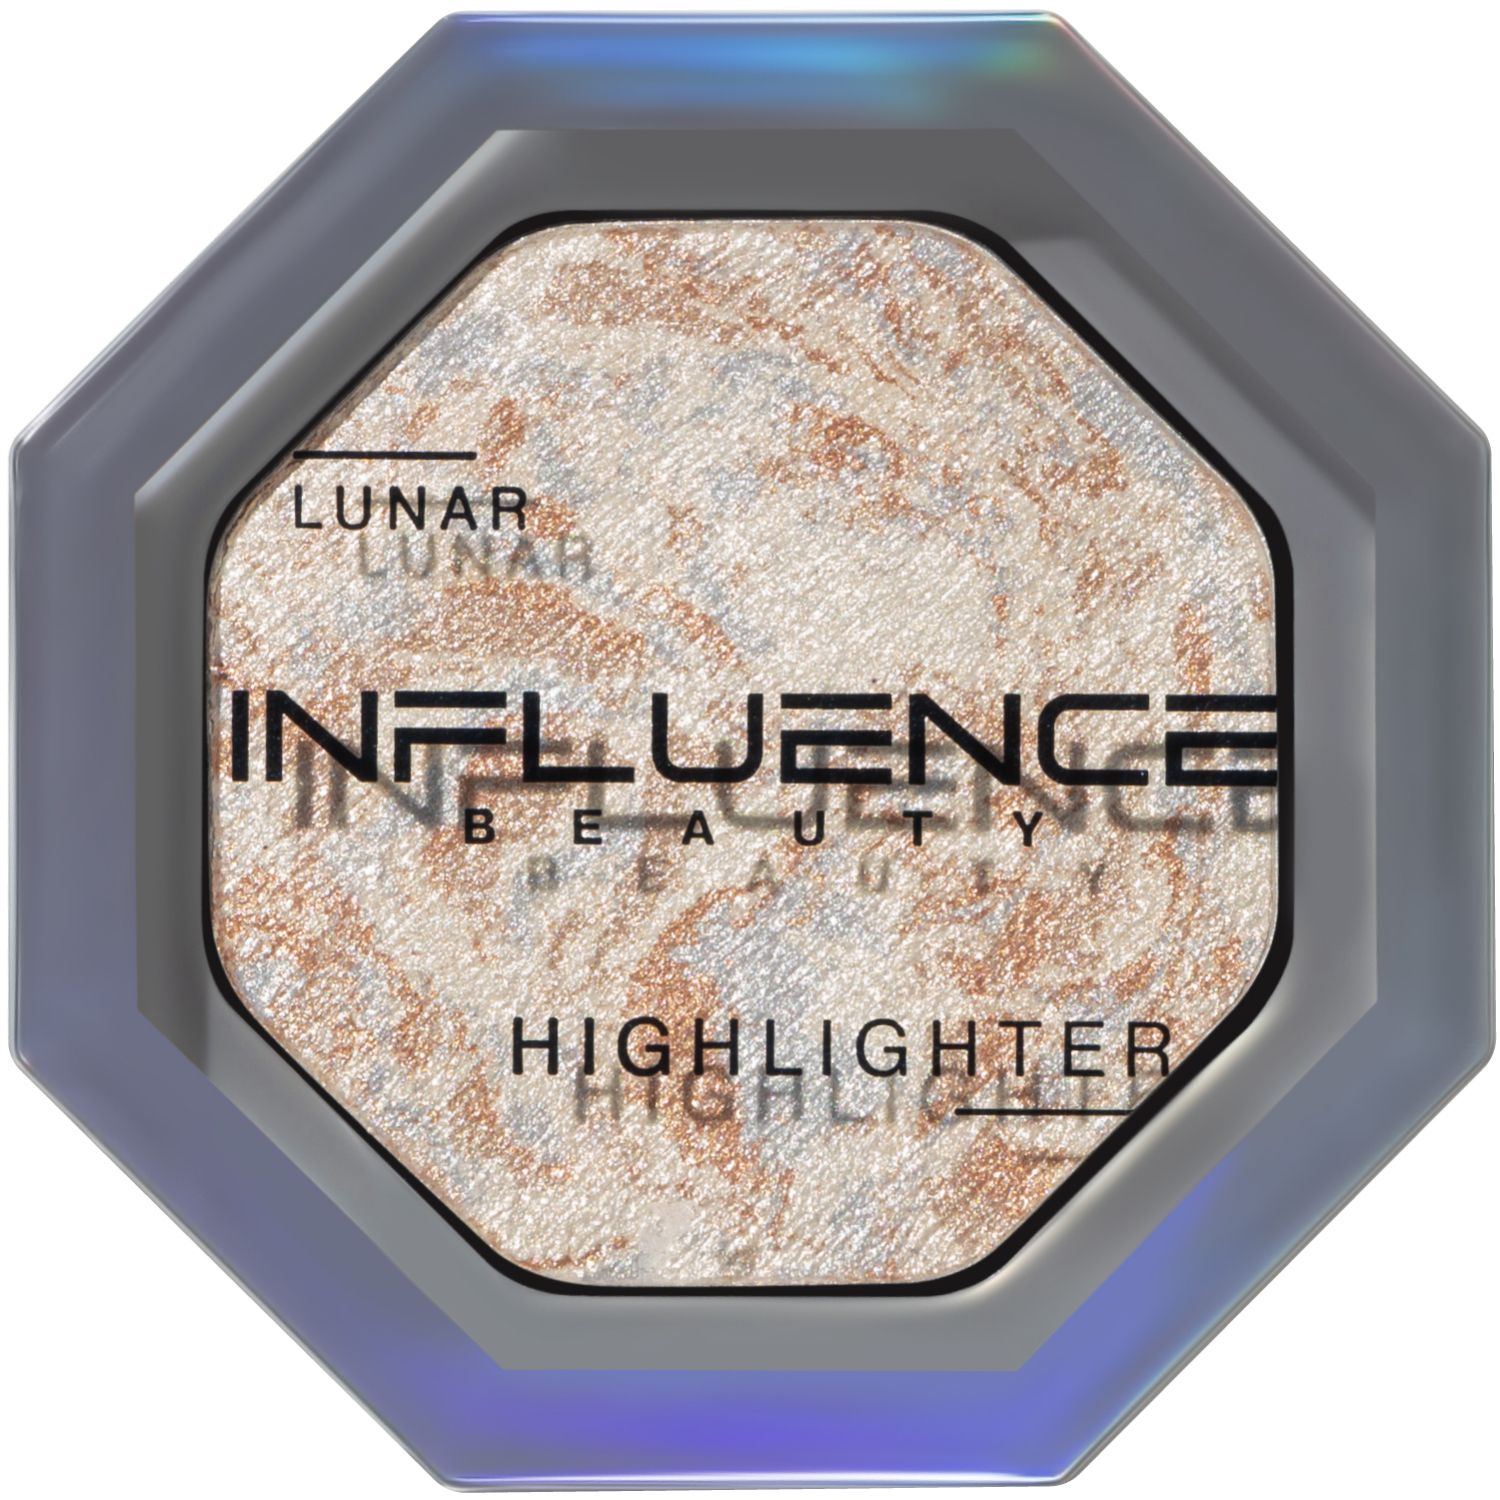 Хайлайтер Influence Beauty LUNAR , эффект деликатного сияния, серебряный, 4,8 г influence beauty палетка теней color algorithm 008 из 5 оттенков